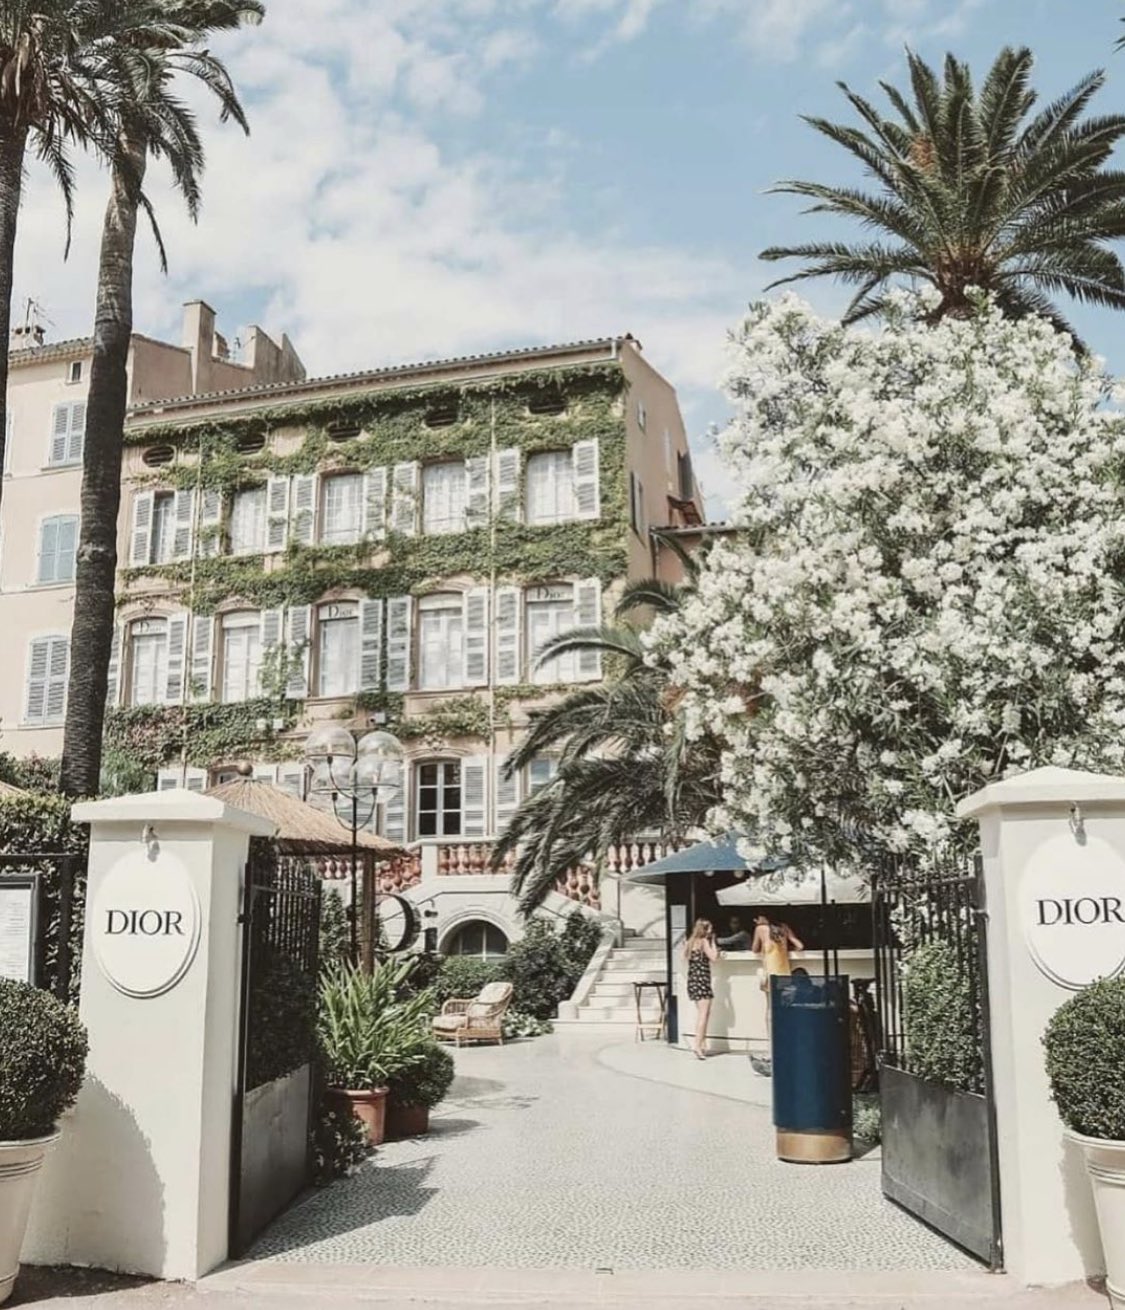 The Dior restaurant in St Tropez